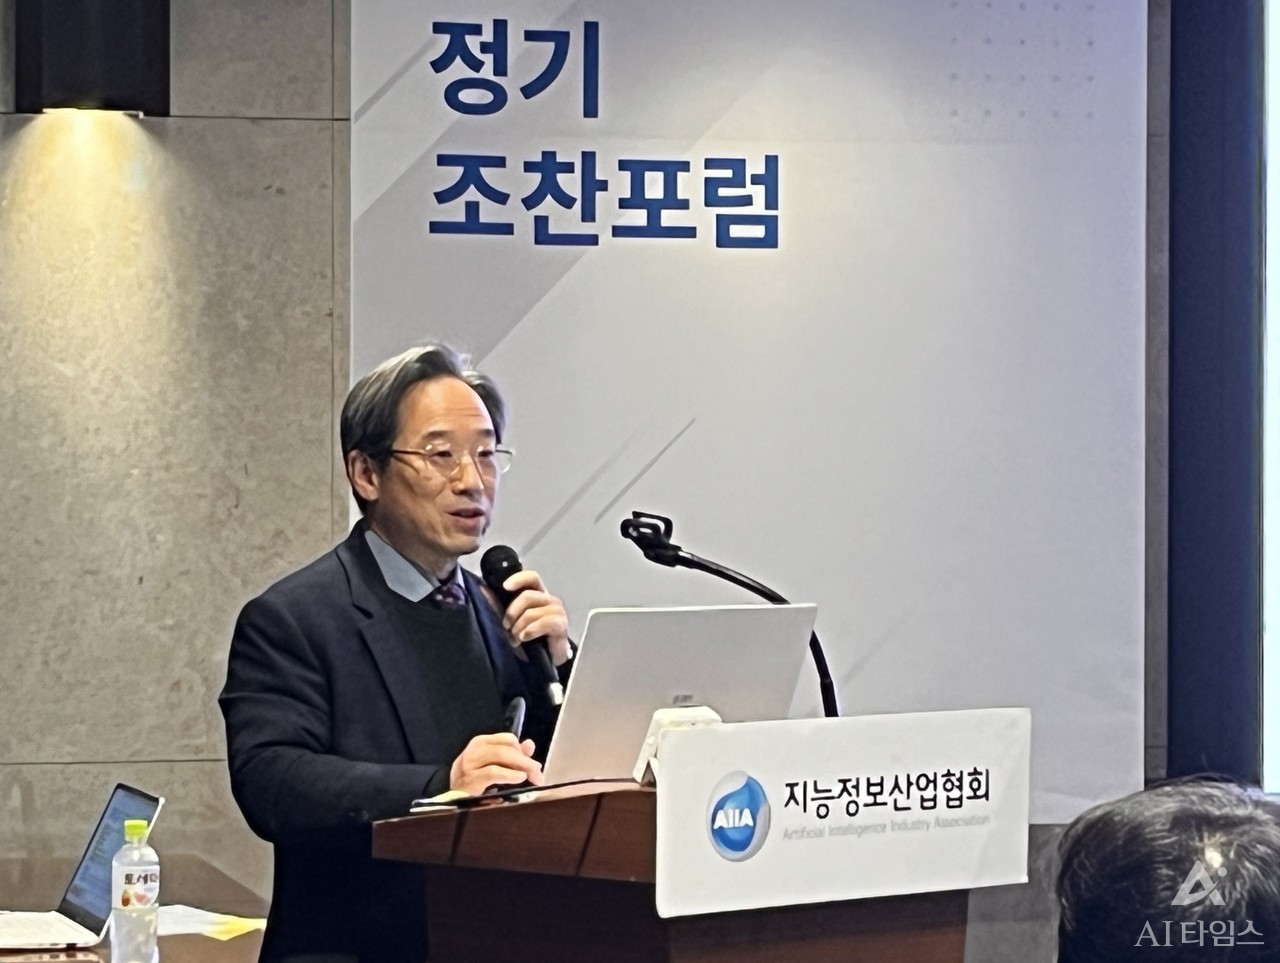 김두현 교수가 23일 양재동 엘타워에서 열린 AIIA조찬 포럼에서 오픈소스의 가치와 대응방안에 관해 발표하고 있다.